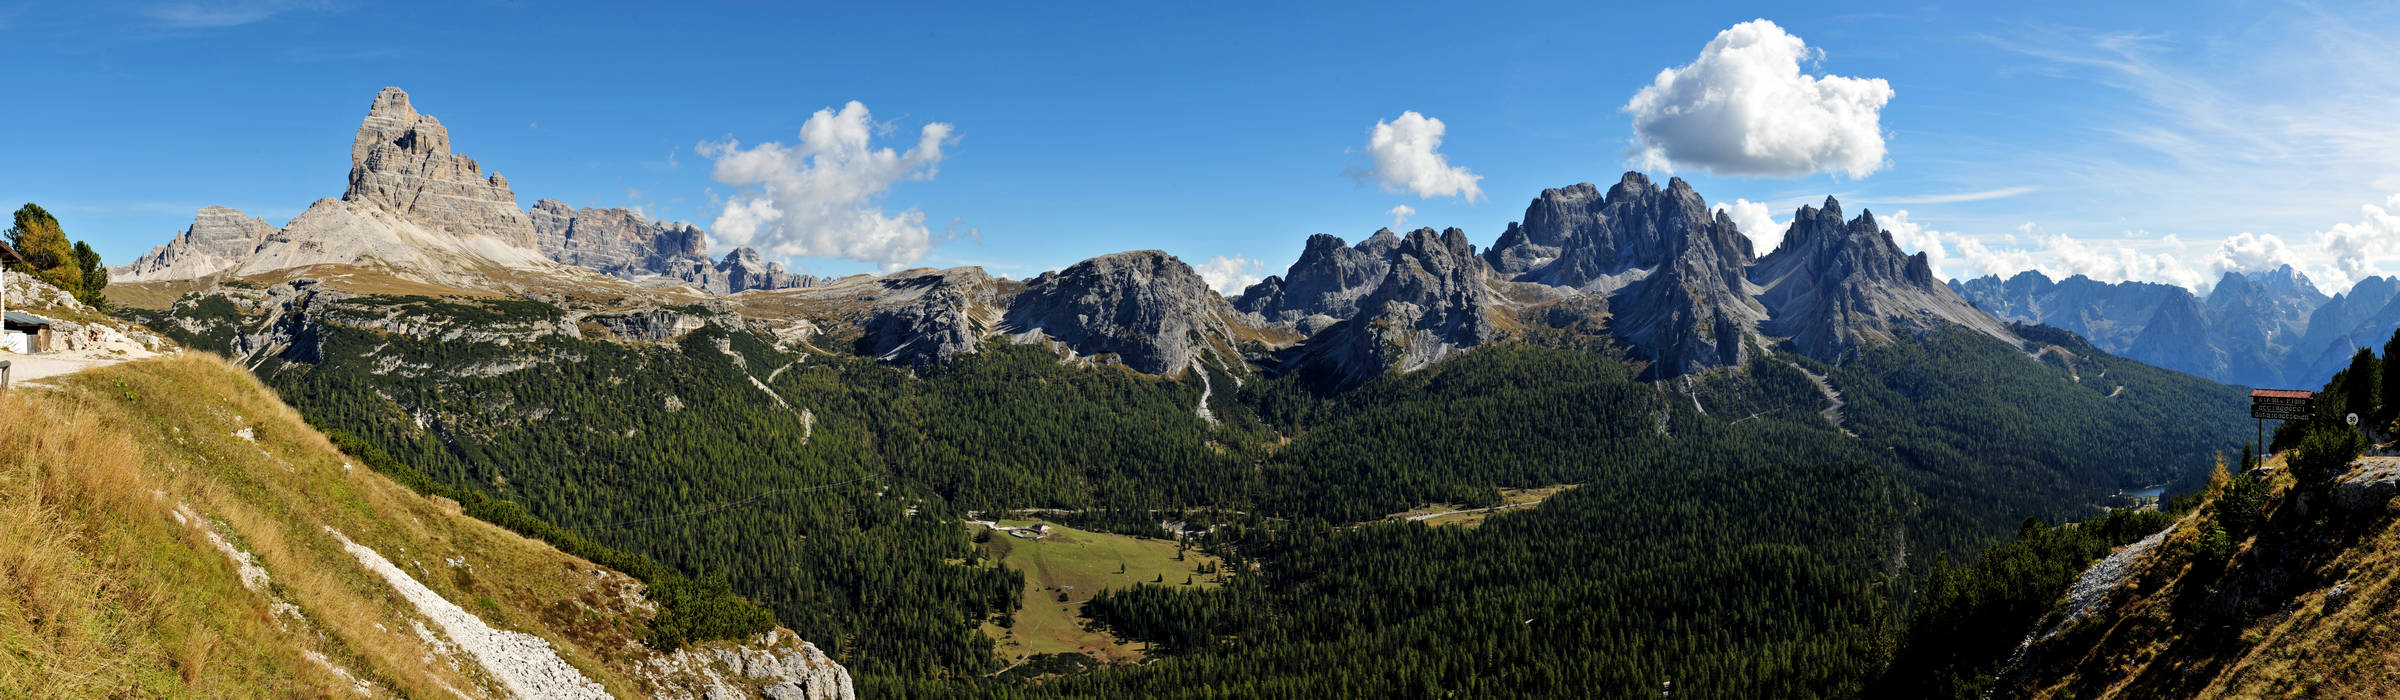 Monte Piana, Misurina, Tre Cime di Lavaredo, Dolomiti di Sesto